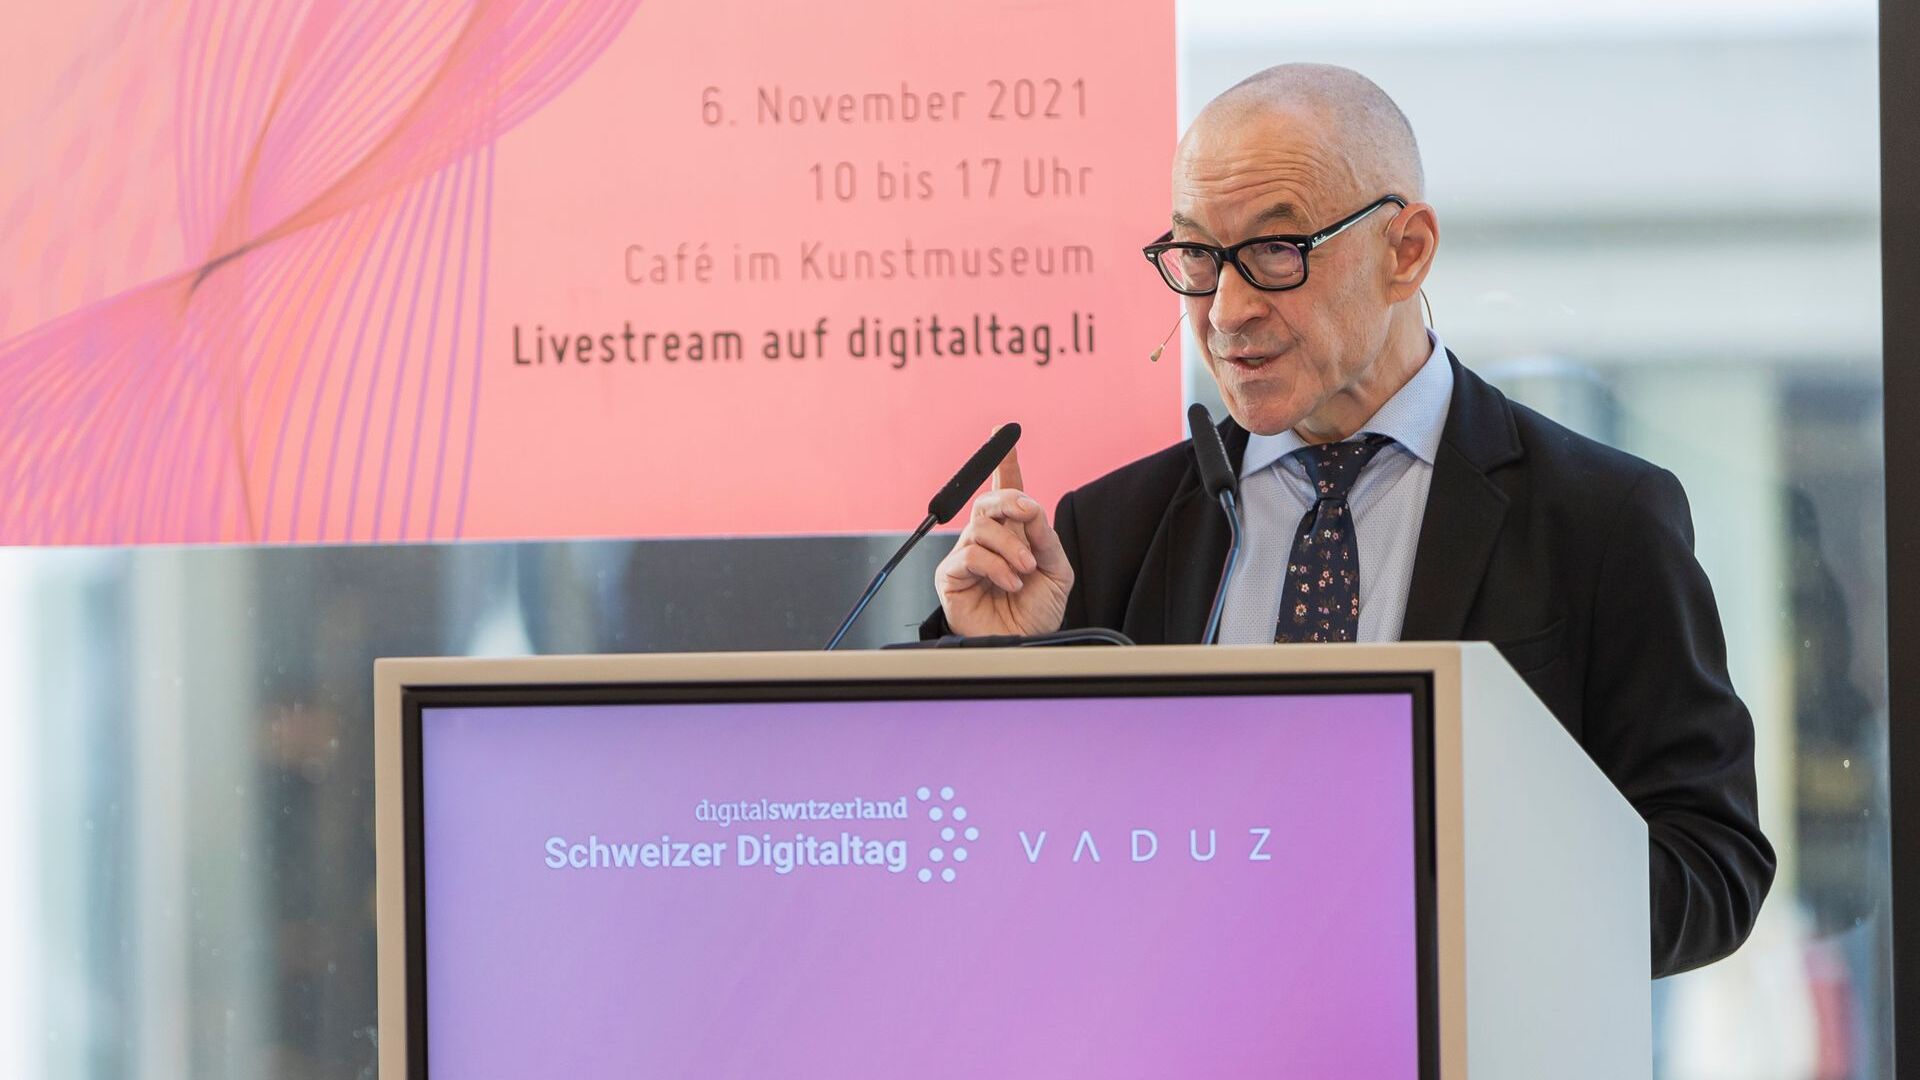 De "Digitaltag Vaduz", verwelkomd door het Kunstmuseum van de hoofdstad van het Vorstendom Liechtenstein op zaterdag 6 november 2021, wekte het enthousiasme van het publiek en de sprekers naar analogie met de "Swiss Digital Day" van de volgende dag 10: de tussenkomst van de futurist en expert van Duitse trends David Bosshart